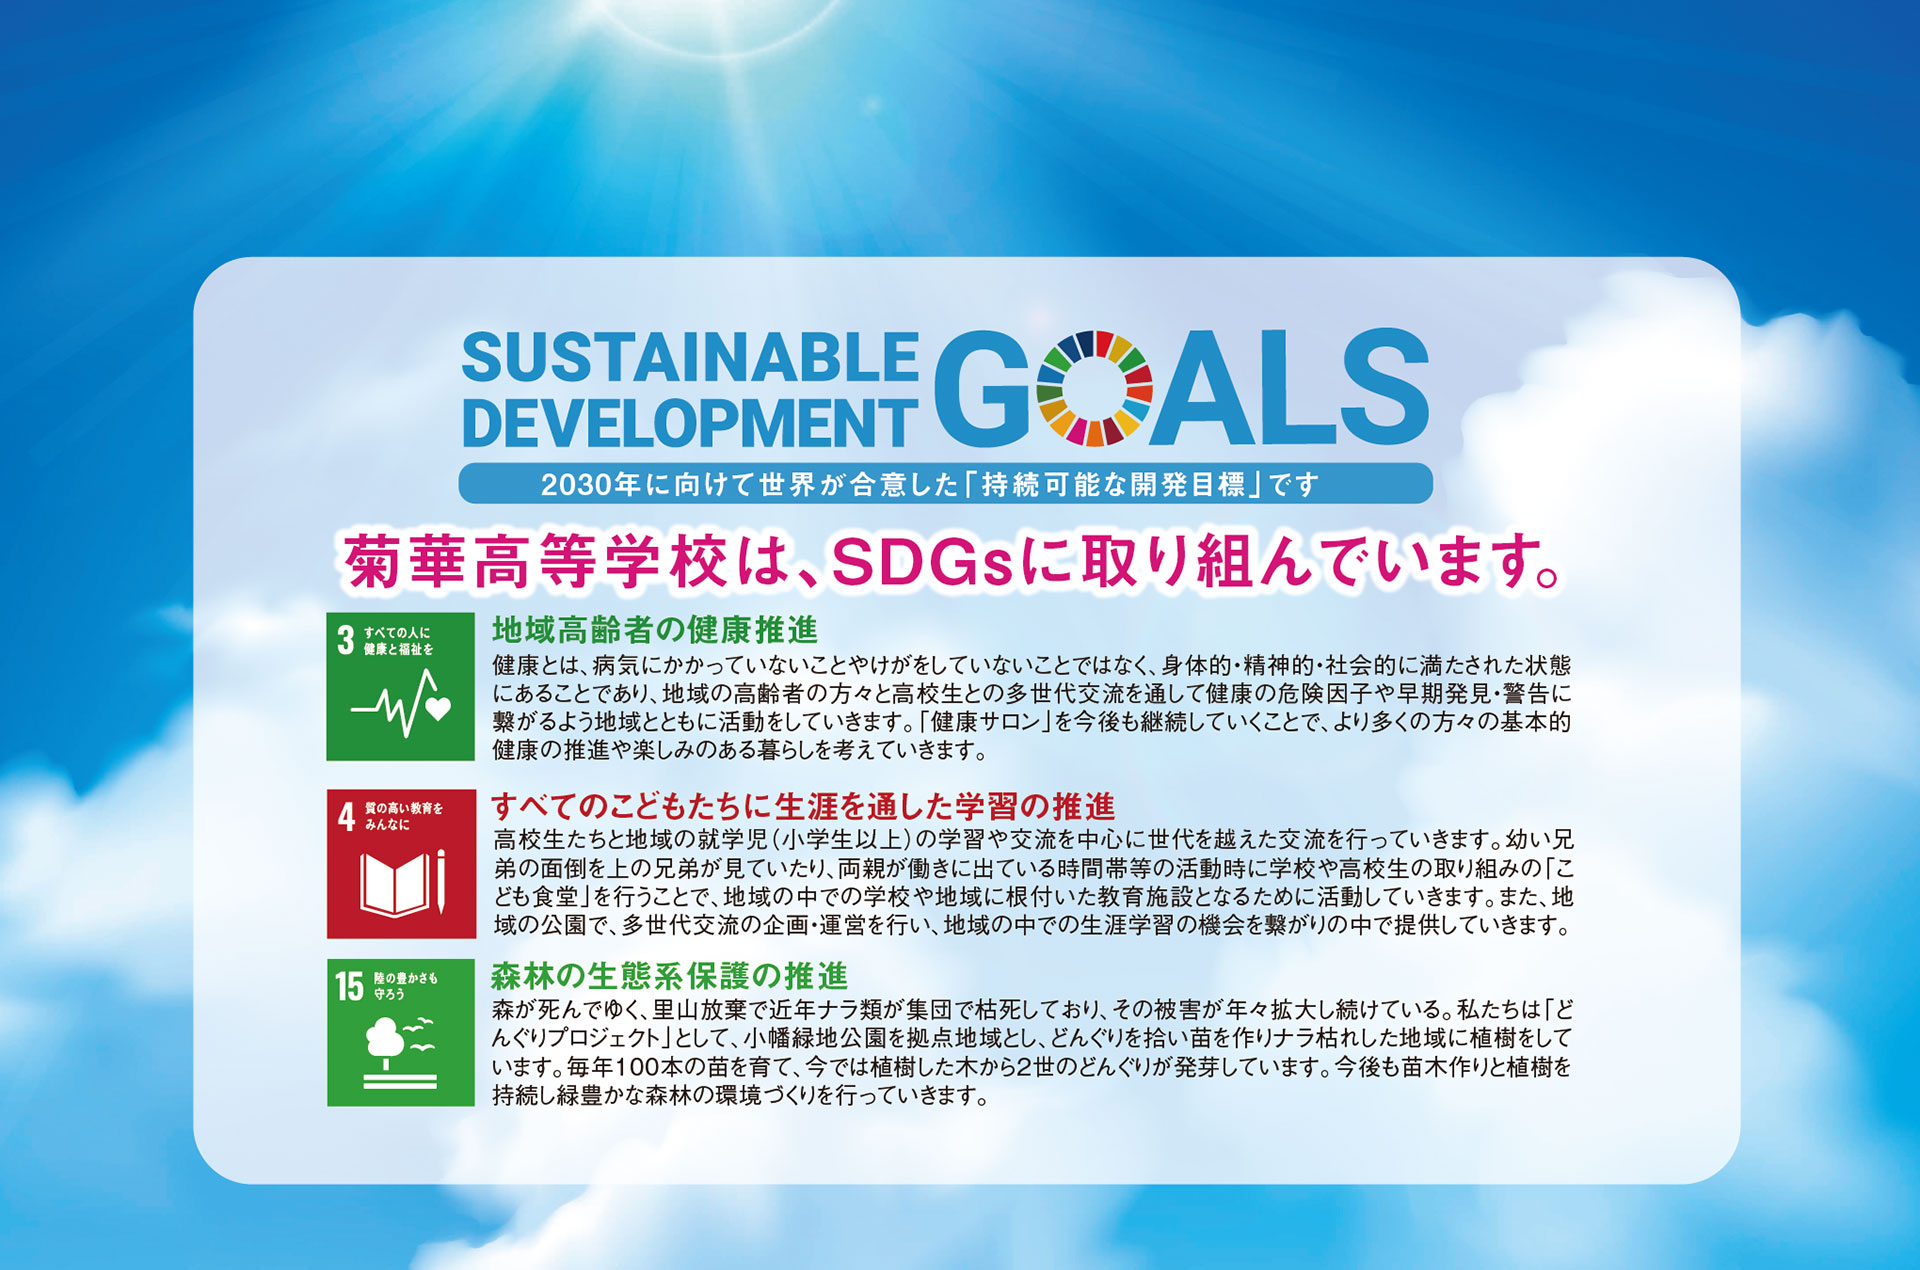 菊華高等学校は、SDGsに取り組んでいます。